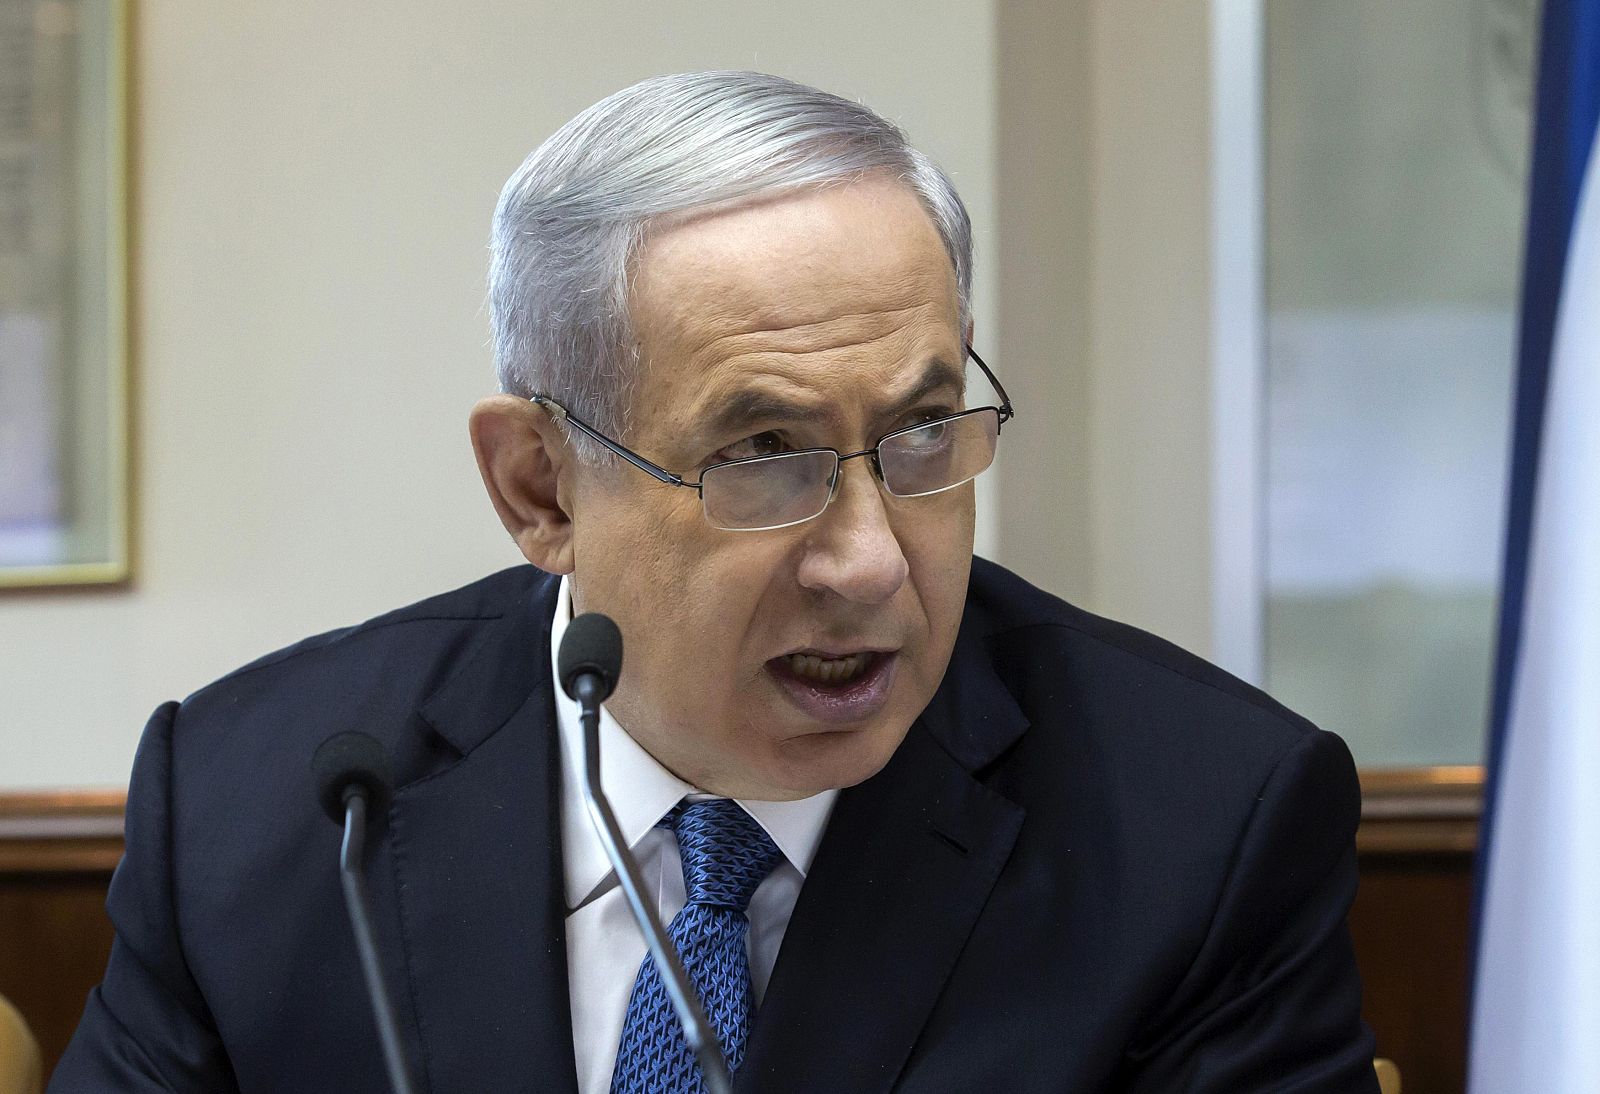 El primer ministro israelí, Benjamin Netanyahu, en una imagen de archivo.